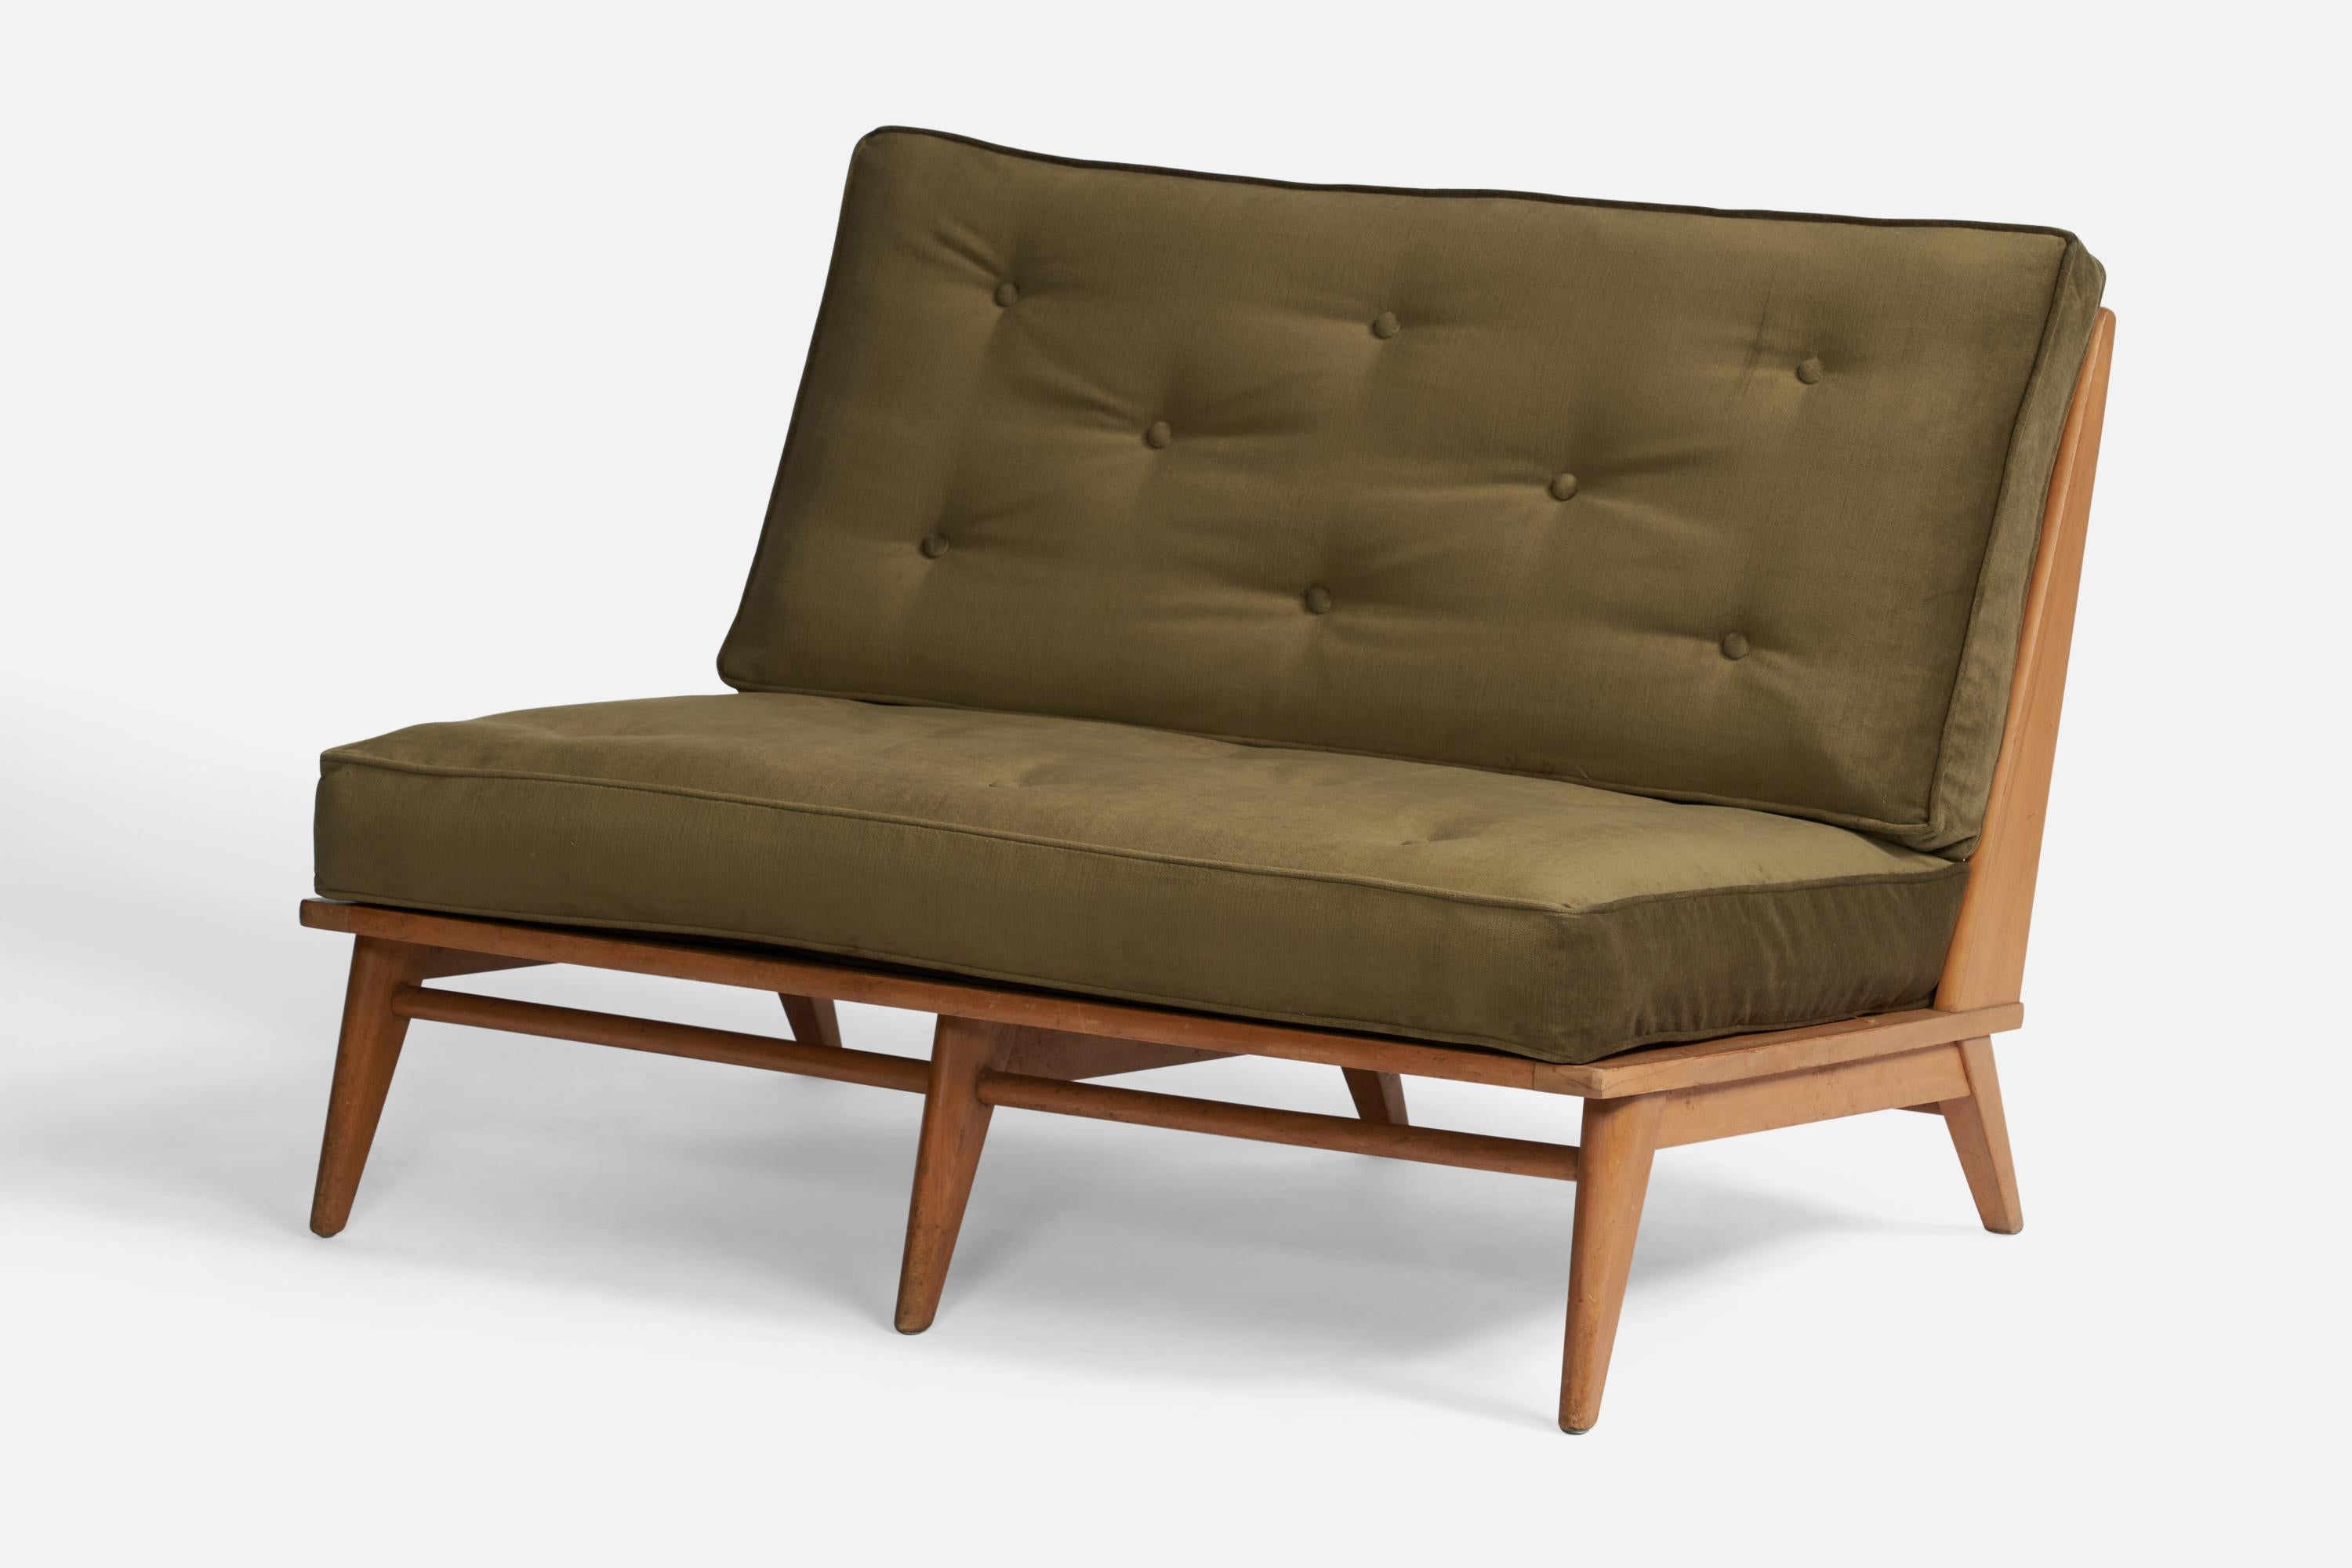 Ein Sofa aus Ahornholz und grünem Samtstoff, entworfen und hergestellt von Heywood Wakefield, USA, 1950er Jahre.

Sitzhöhe 16